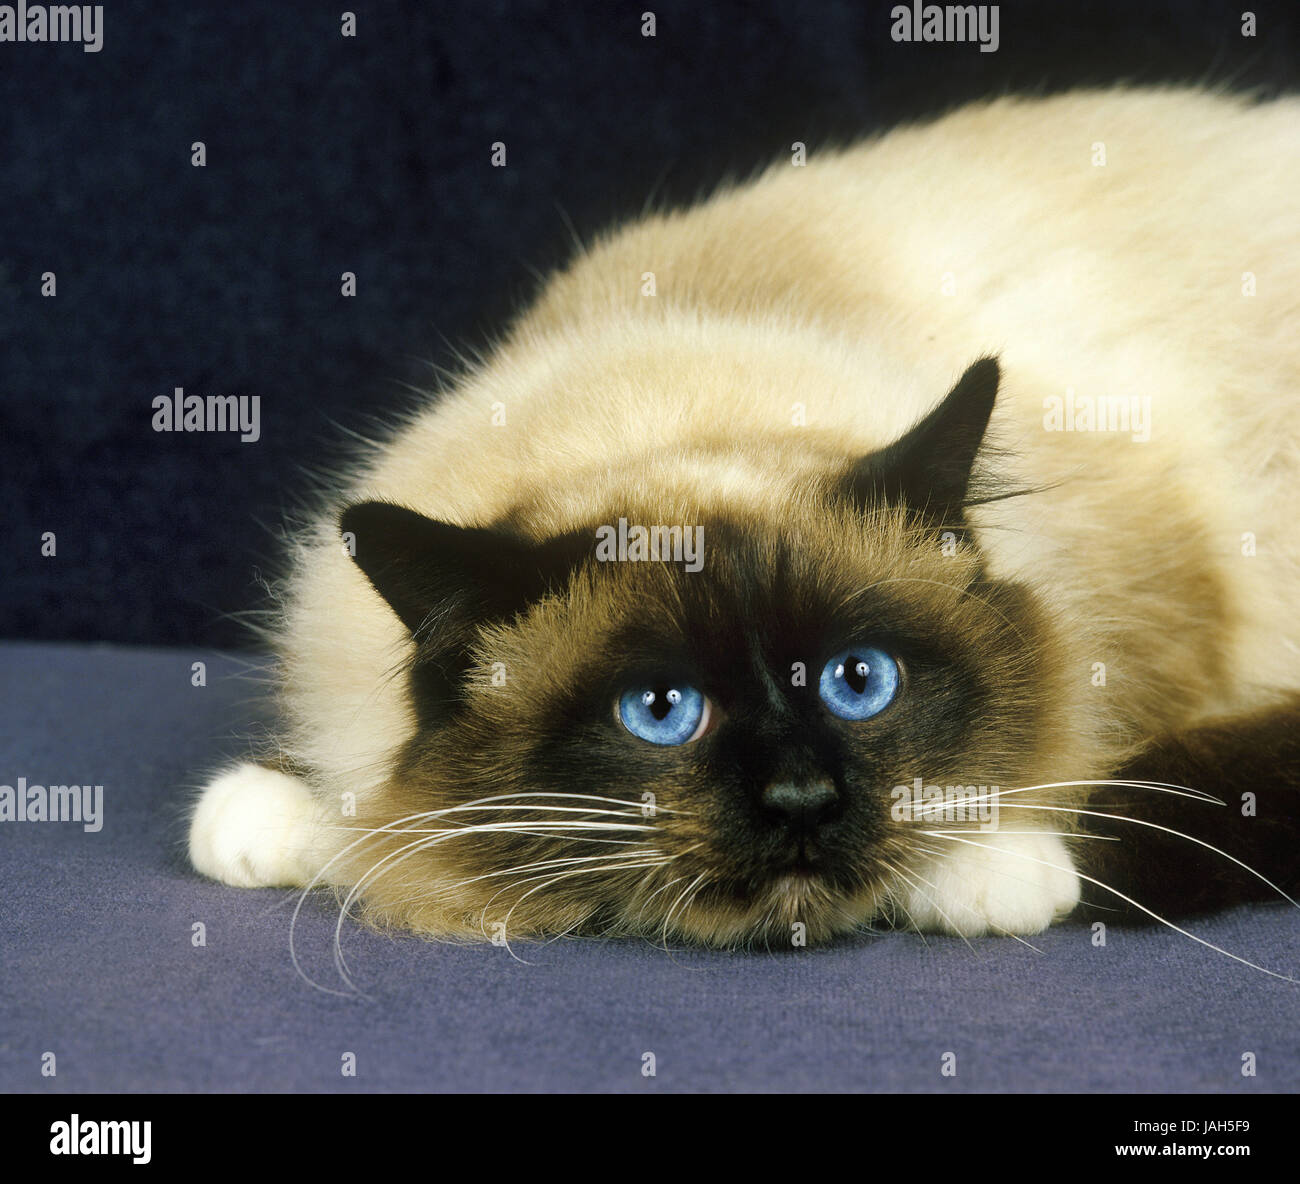 Burma cat,lying,studio, Stock Photo